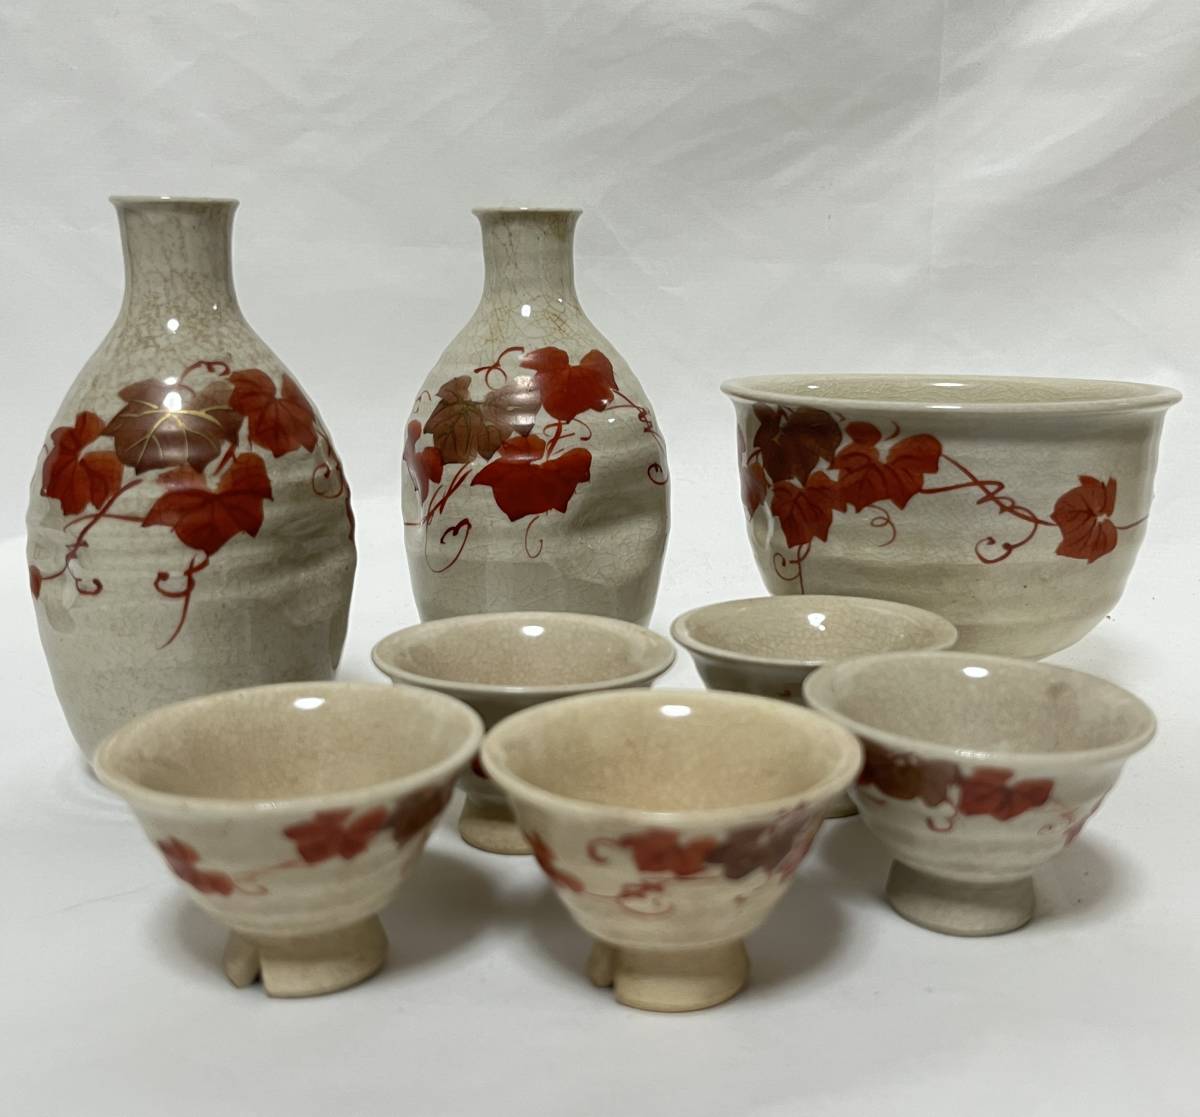  Kutani sake cup and bottle set sake bottle sake cup tea cup ivy pattern red .